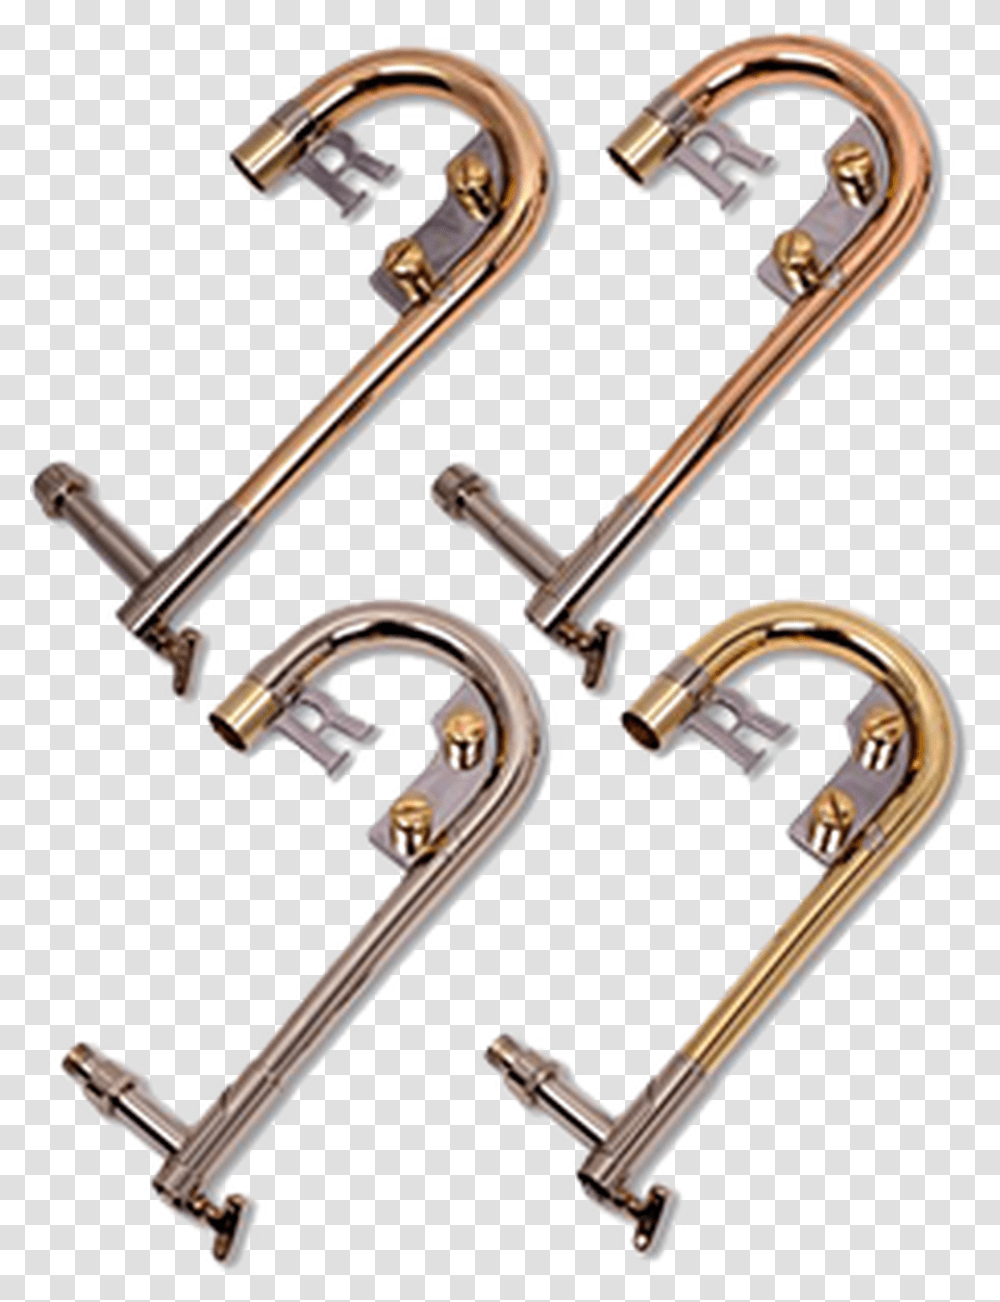 Michael Rath Alto Trombones Model R11k Brass, Shower Faucet, Musical Instrument, Leisure Activities Transparent Png